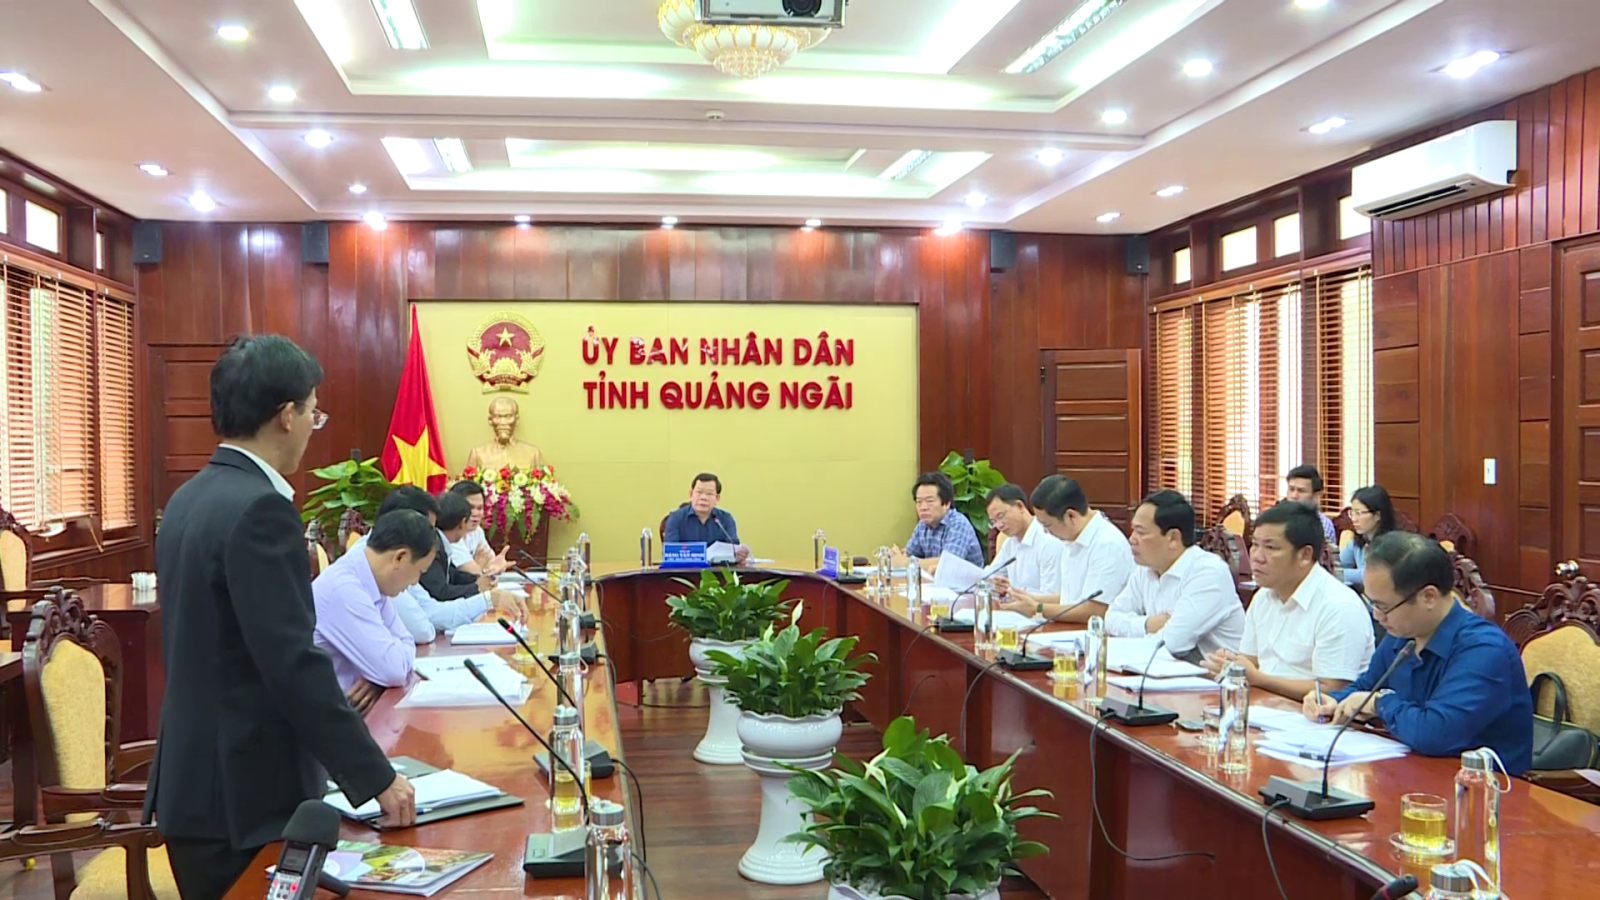 UBND tỉnh Quảng Ngãi họp tháo gỡ vướng mắc một số dự án. Ảnh: Mỹ An